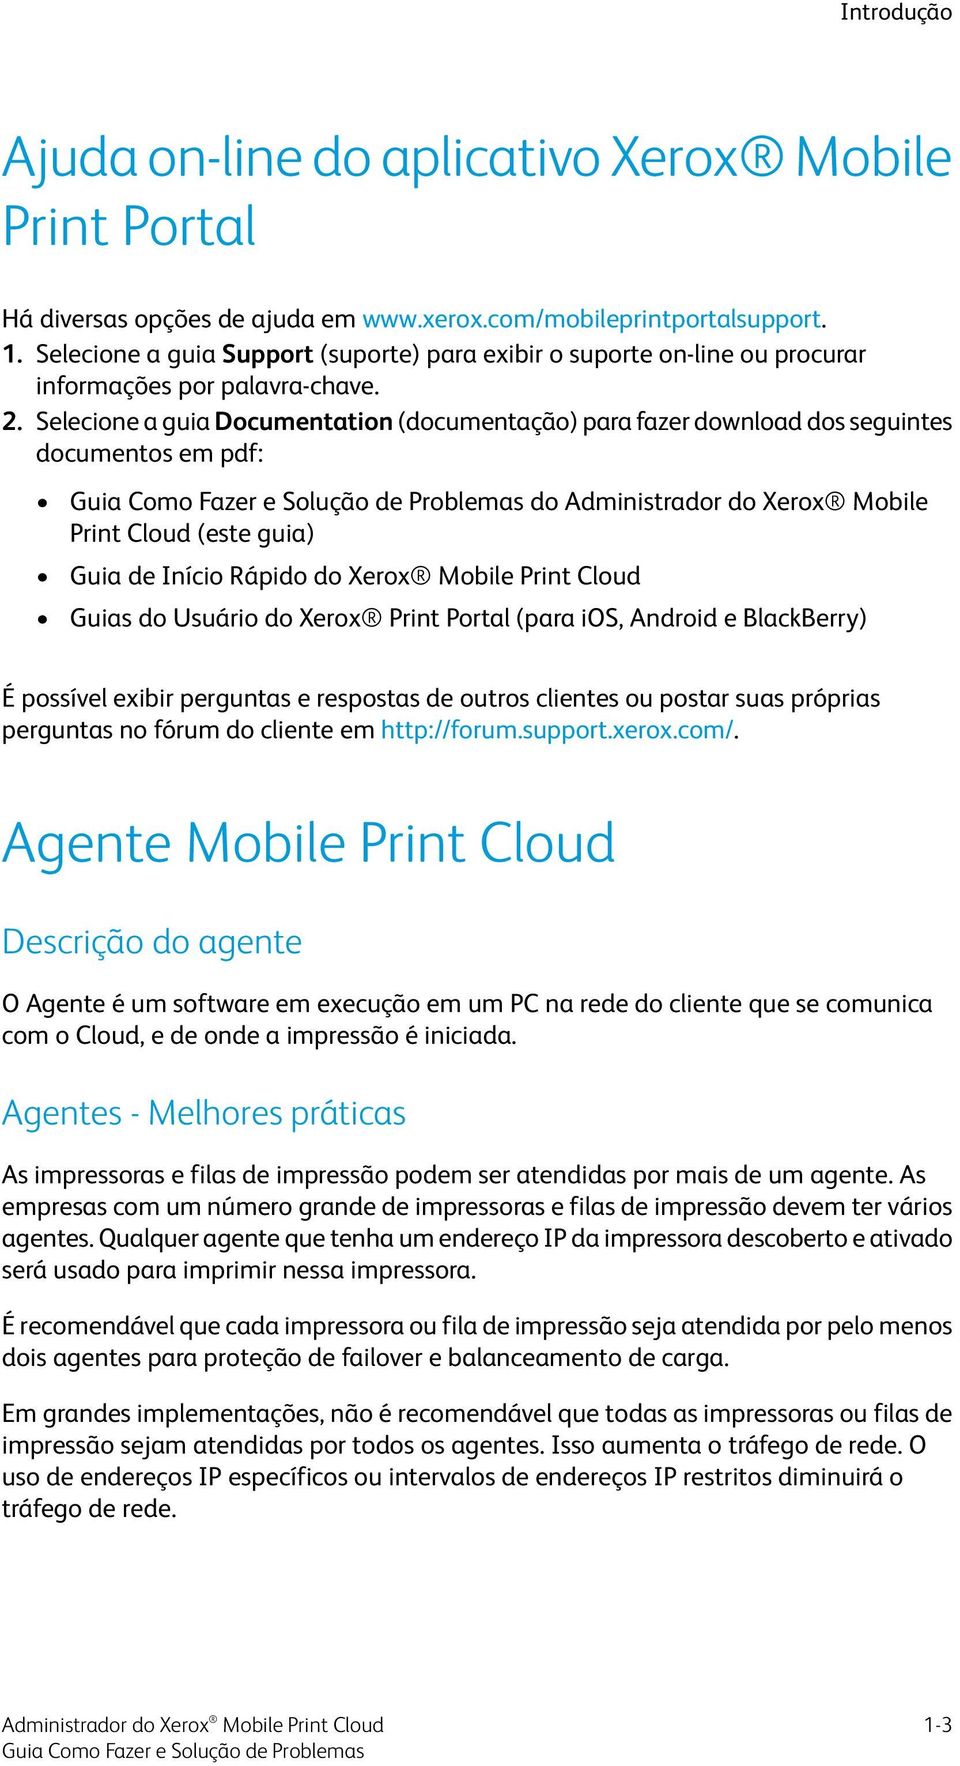 Selecione a guia Documentation (documentação) para fazer download dos seguintes documentos em pdf: do Administrador do Xerox Mobile Print Cloud (este guia) Guia de Início Rápido do Xerox Mobile Print